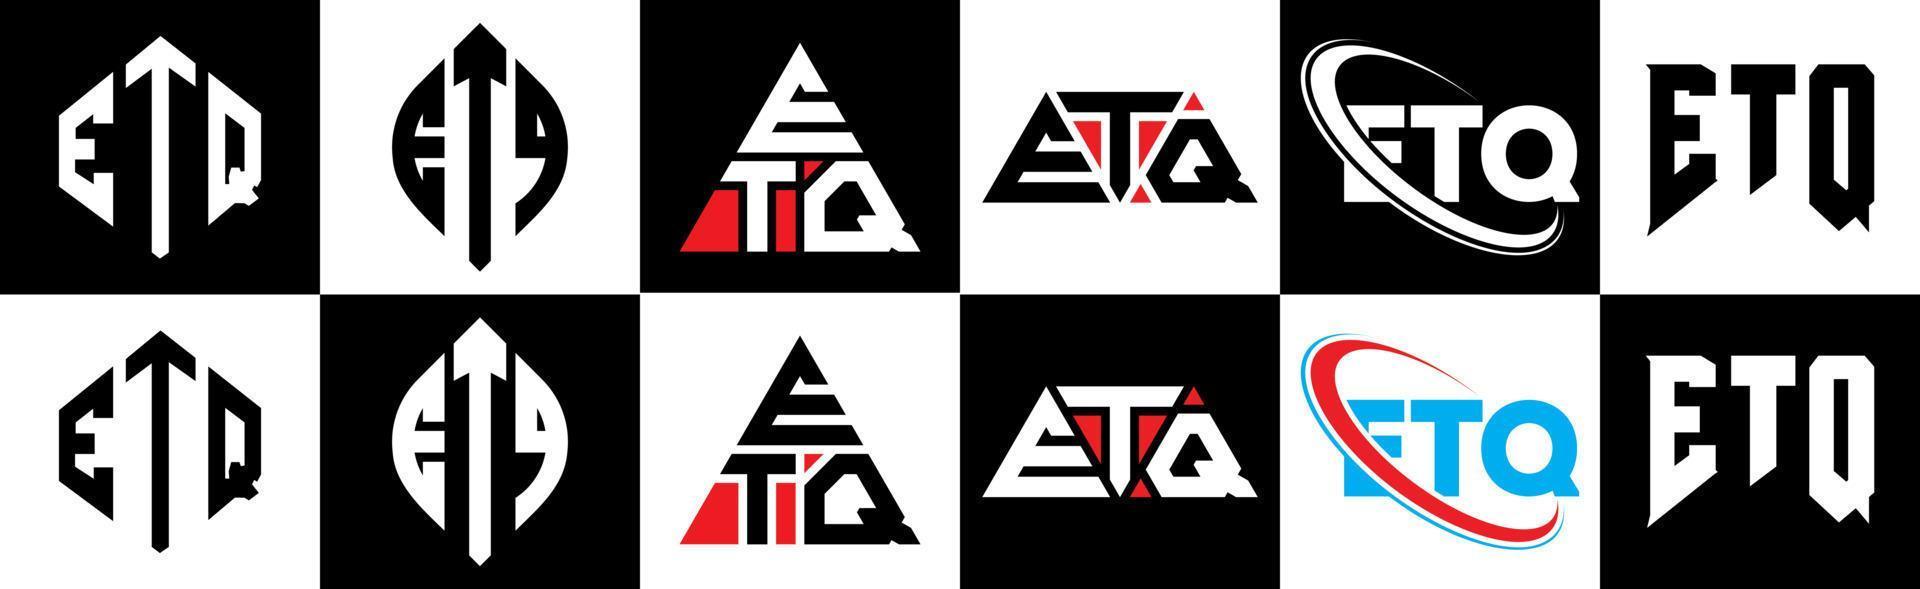 création de logo de lettre etq en six styles. polygone etq, cercle, triangle, hexagone, style plat et simple avec logo de lettre de variation de couleur noir et blanc dans un plan de travail. etq logo minimaliste et classique vecteur